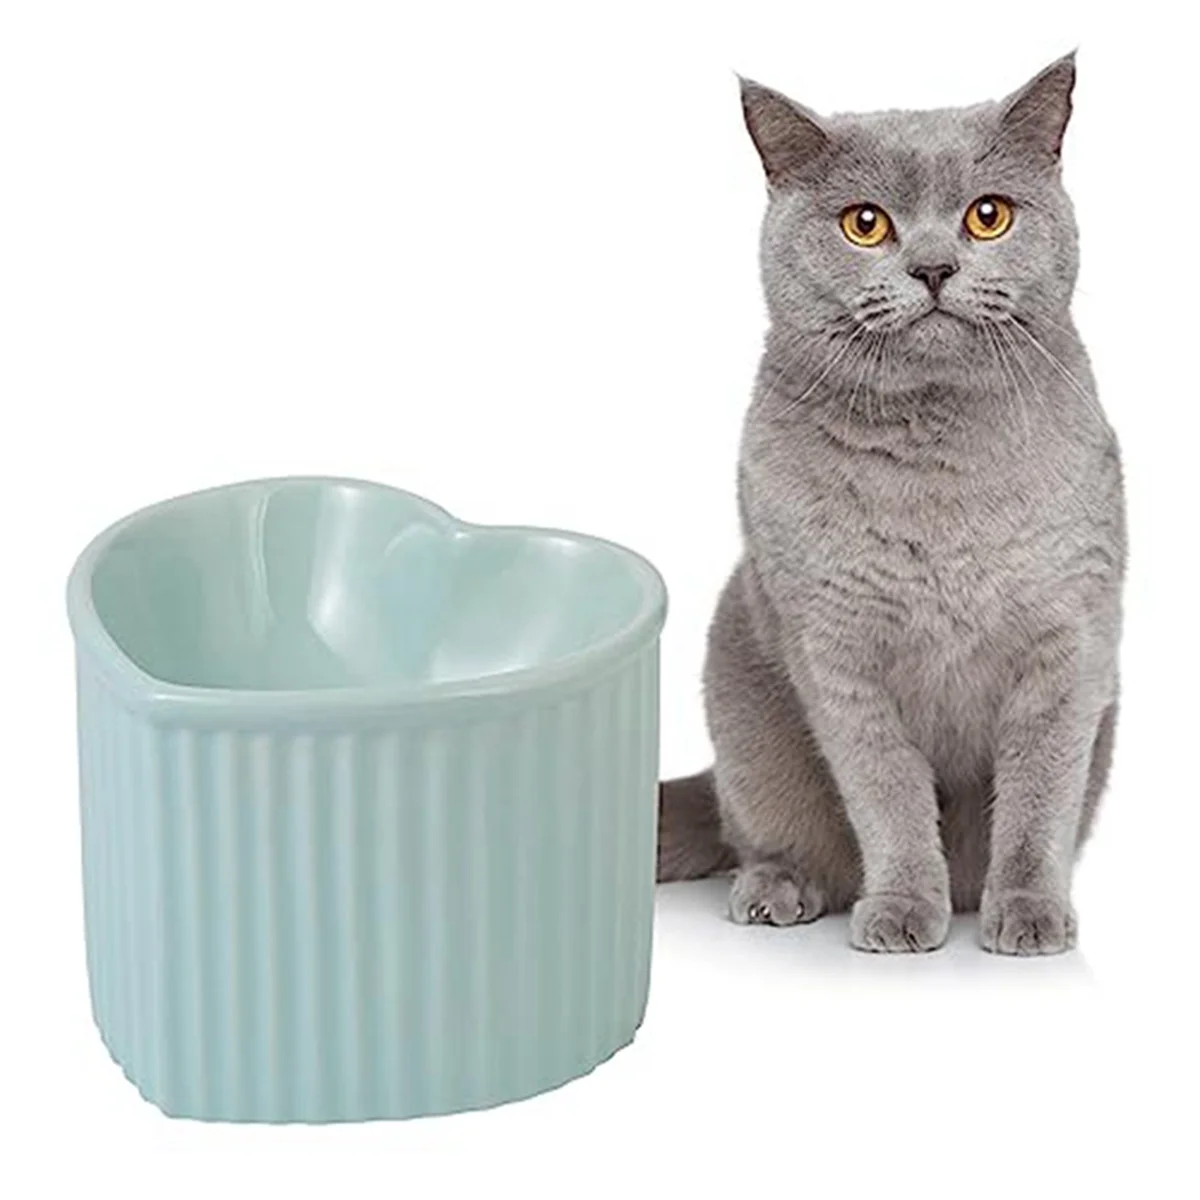 

Керамические приподнятые миски для кошек, наклонные приподнятые миски для еды или воды, без стресса, предотвращение обратного тока, можно мыть в посудомоечной машине, для микроволновой печи